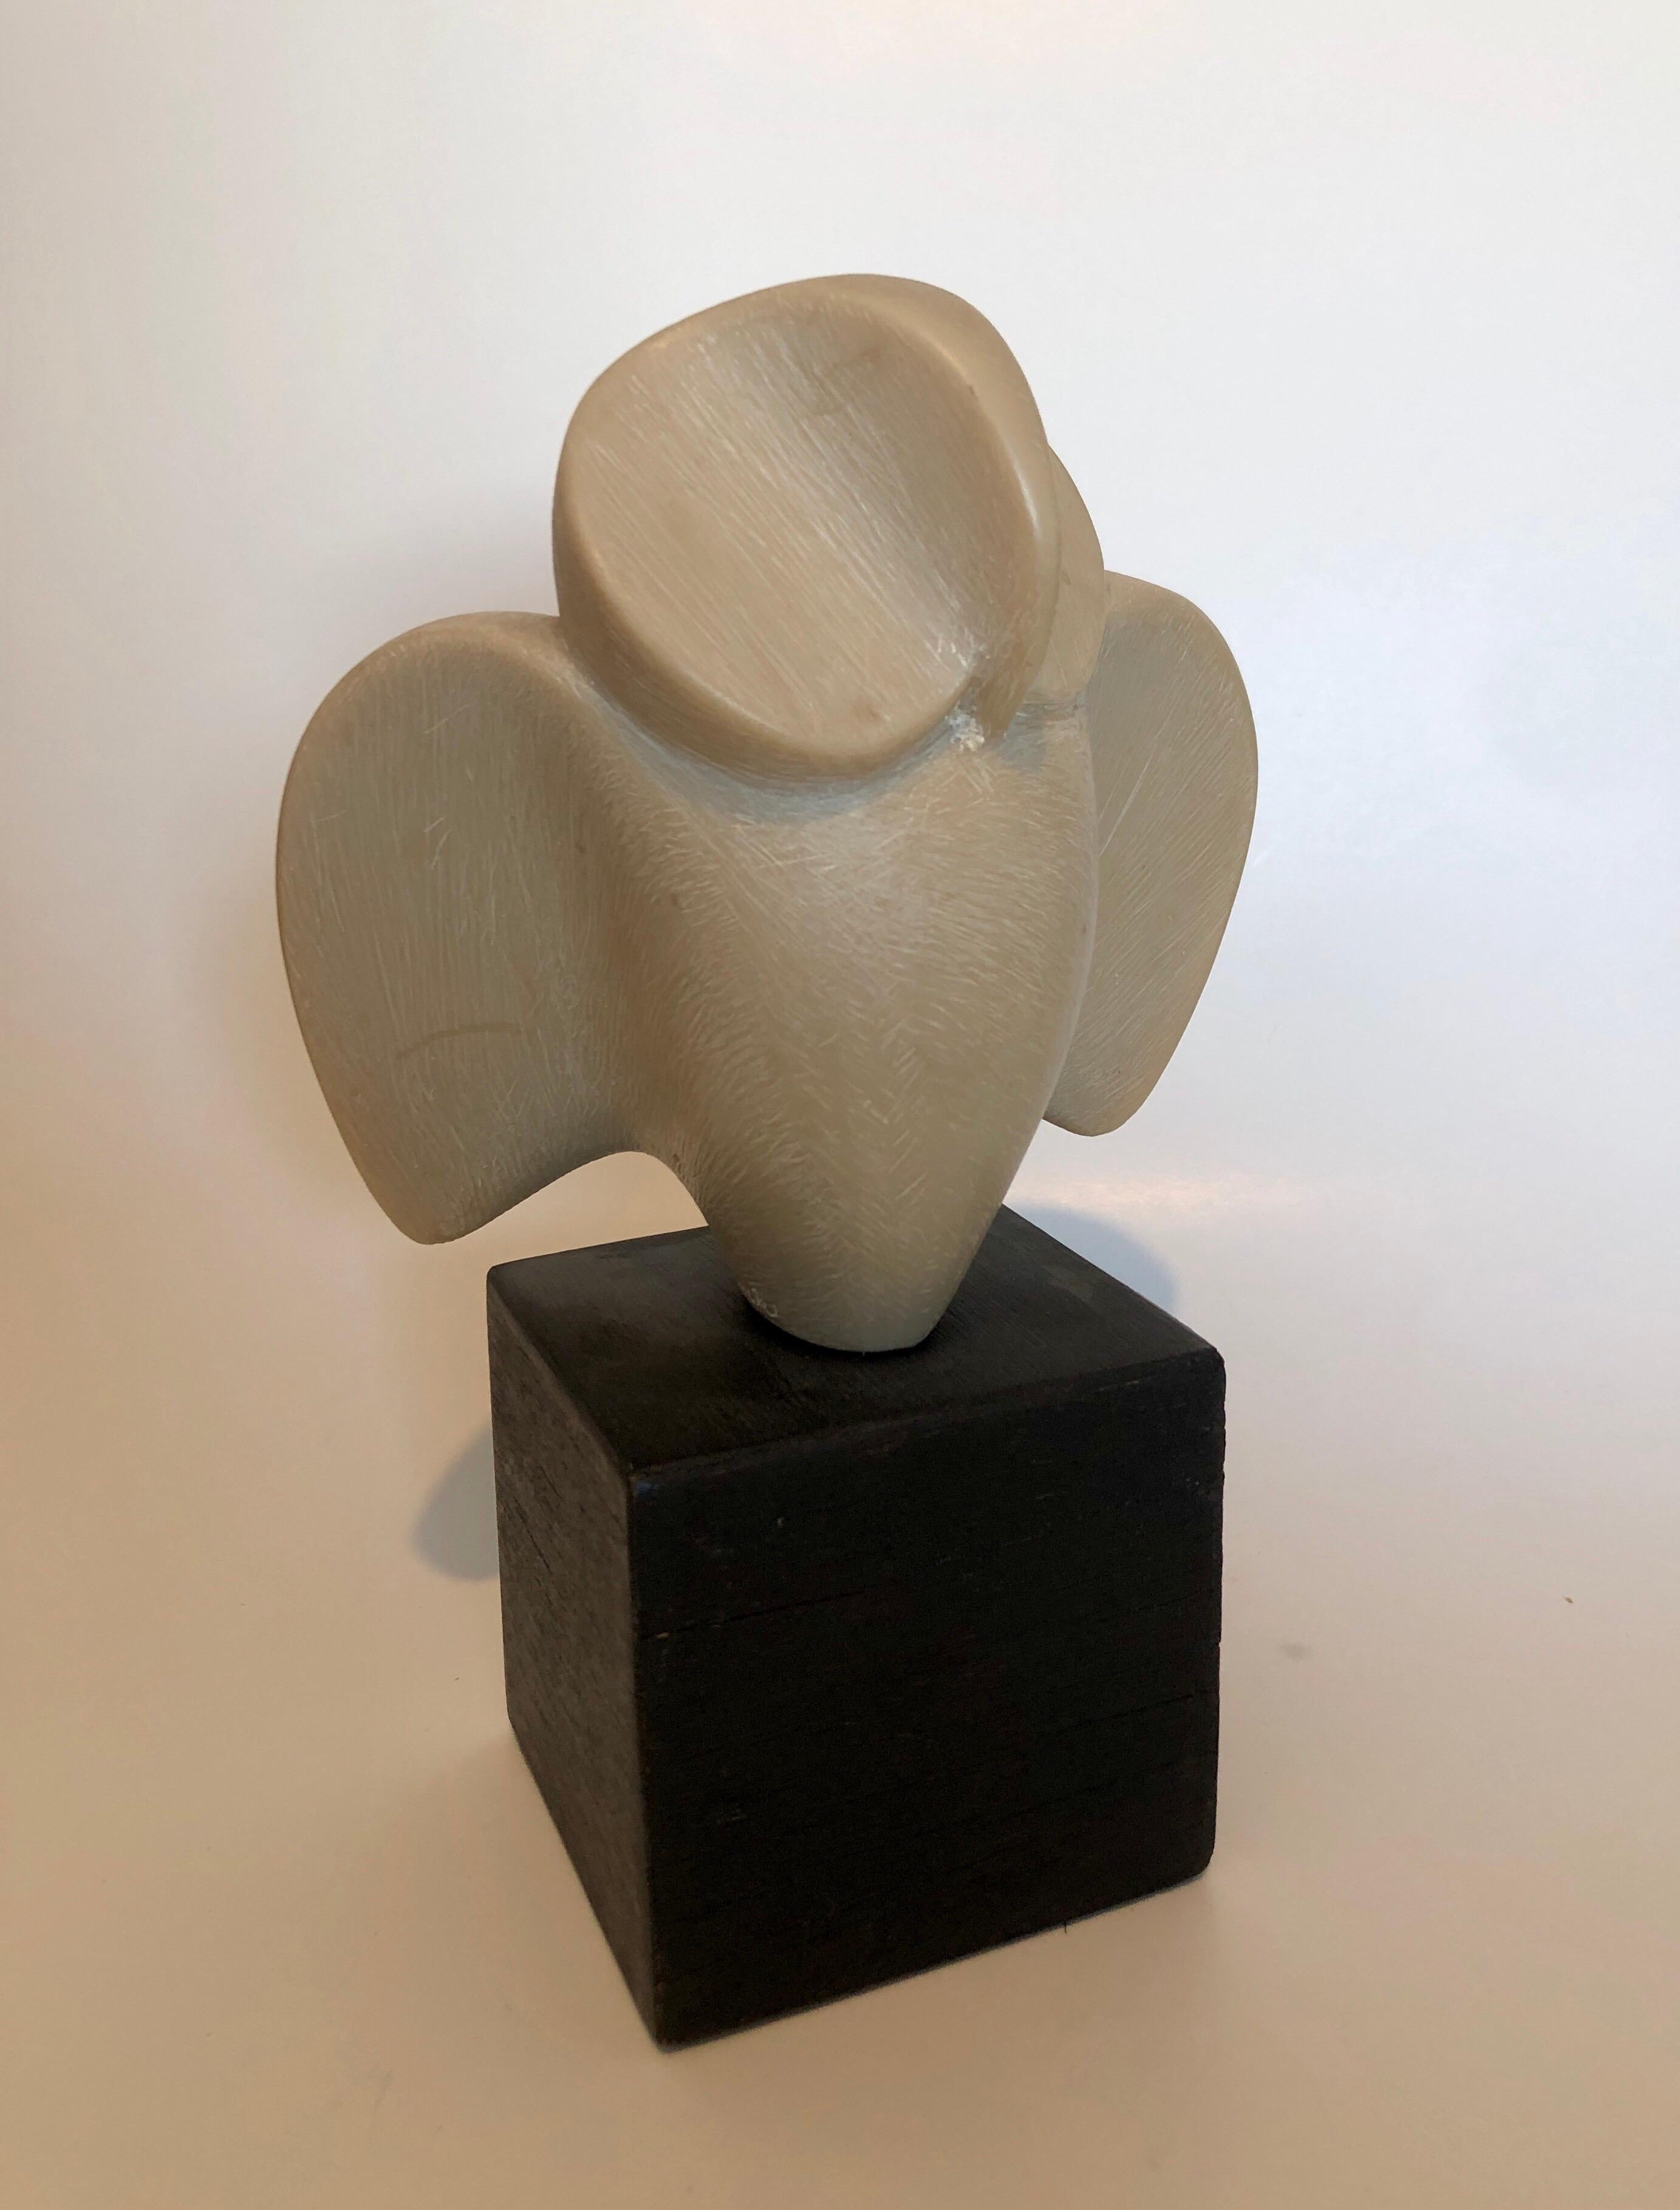 Le sculpteur américain Joseph Martinek est né à Chicago en 1915. Il était un apprenti de deuxième génération d'Auguste Rodin. Il a étudié la sculpture à l'École industrielle d'art de Prague, en Tchécoslovaquie, de 1934 à 1939. 
Cette forme abstraite